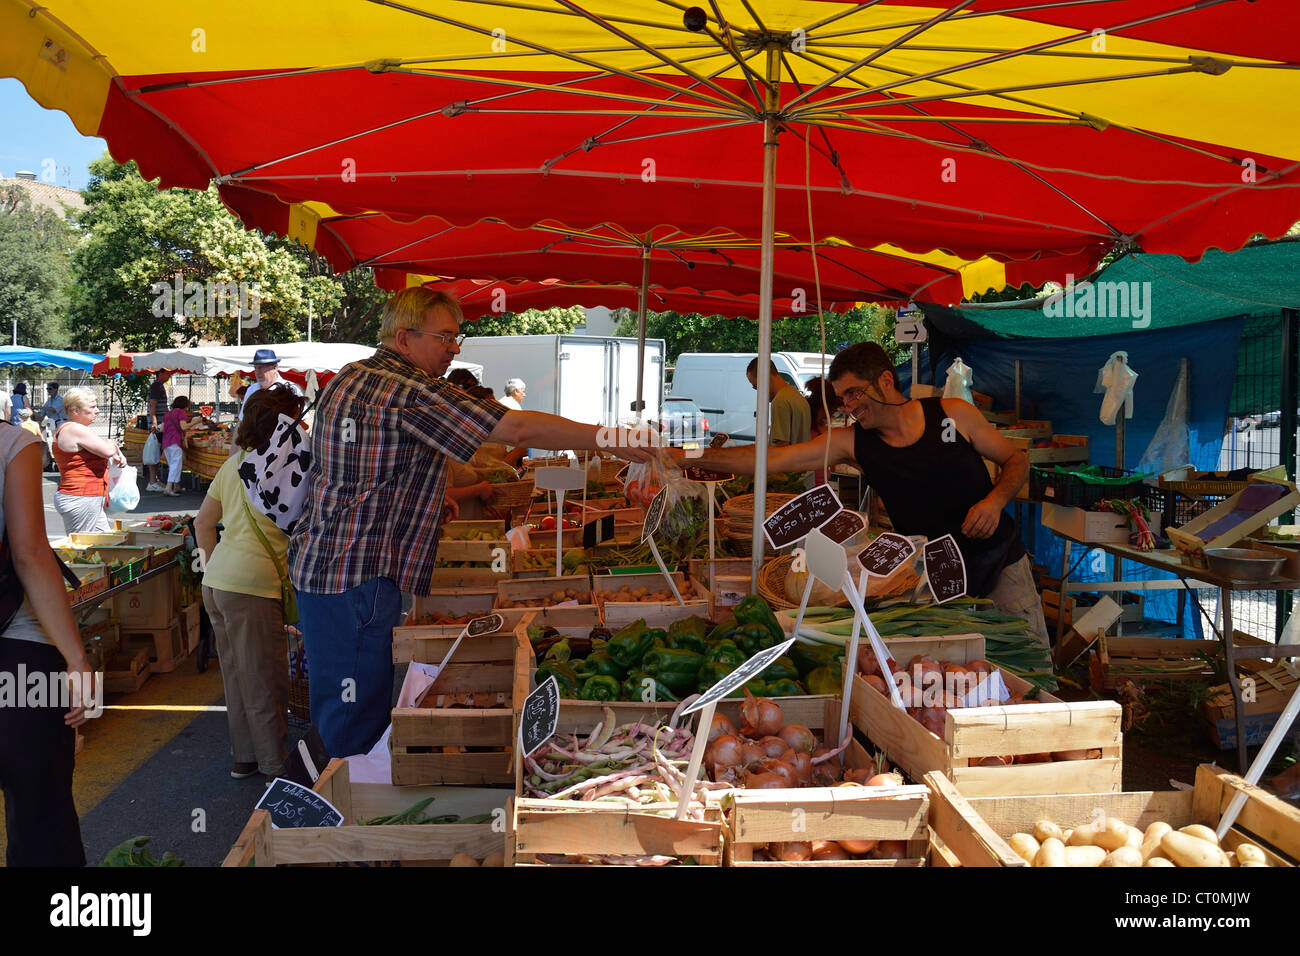 Marché alimentaire extérieur (cité marchande) à Cagnes-sur-Mer, Côte d'Azur, Alpes-Maritimes, Provence-Alpes-Côte d'Azur, France Banque D'Images